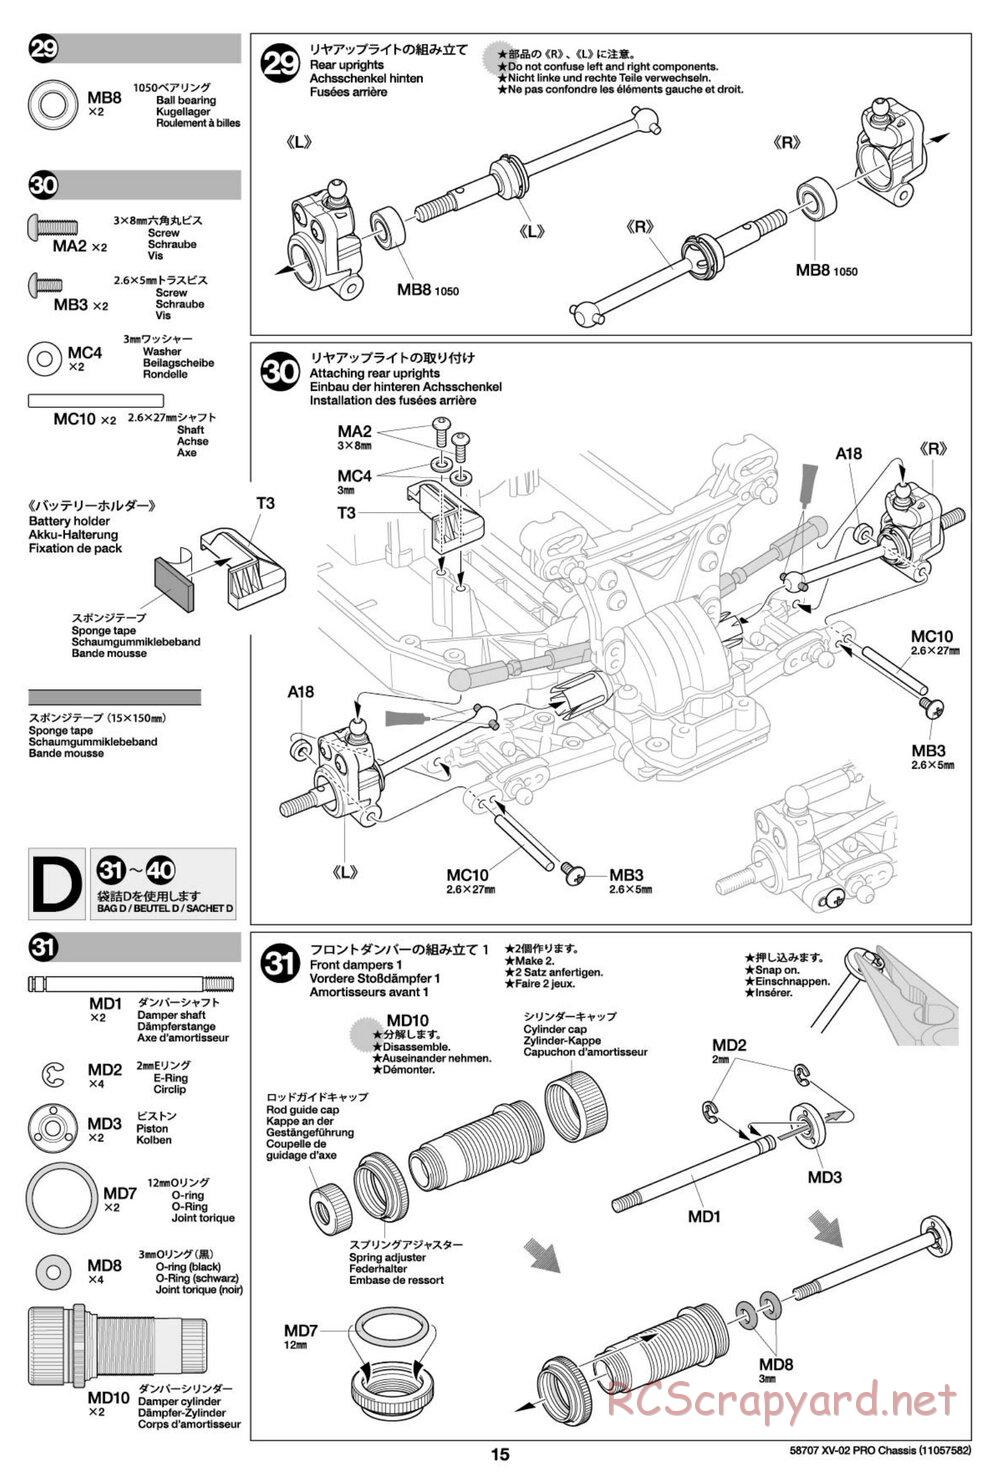 Tamiya - XV-02 Pro Chassis - Manual - Page 15